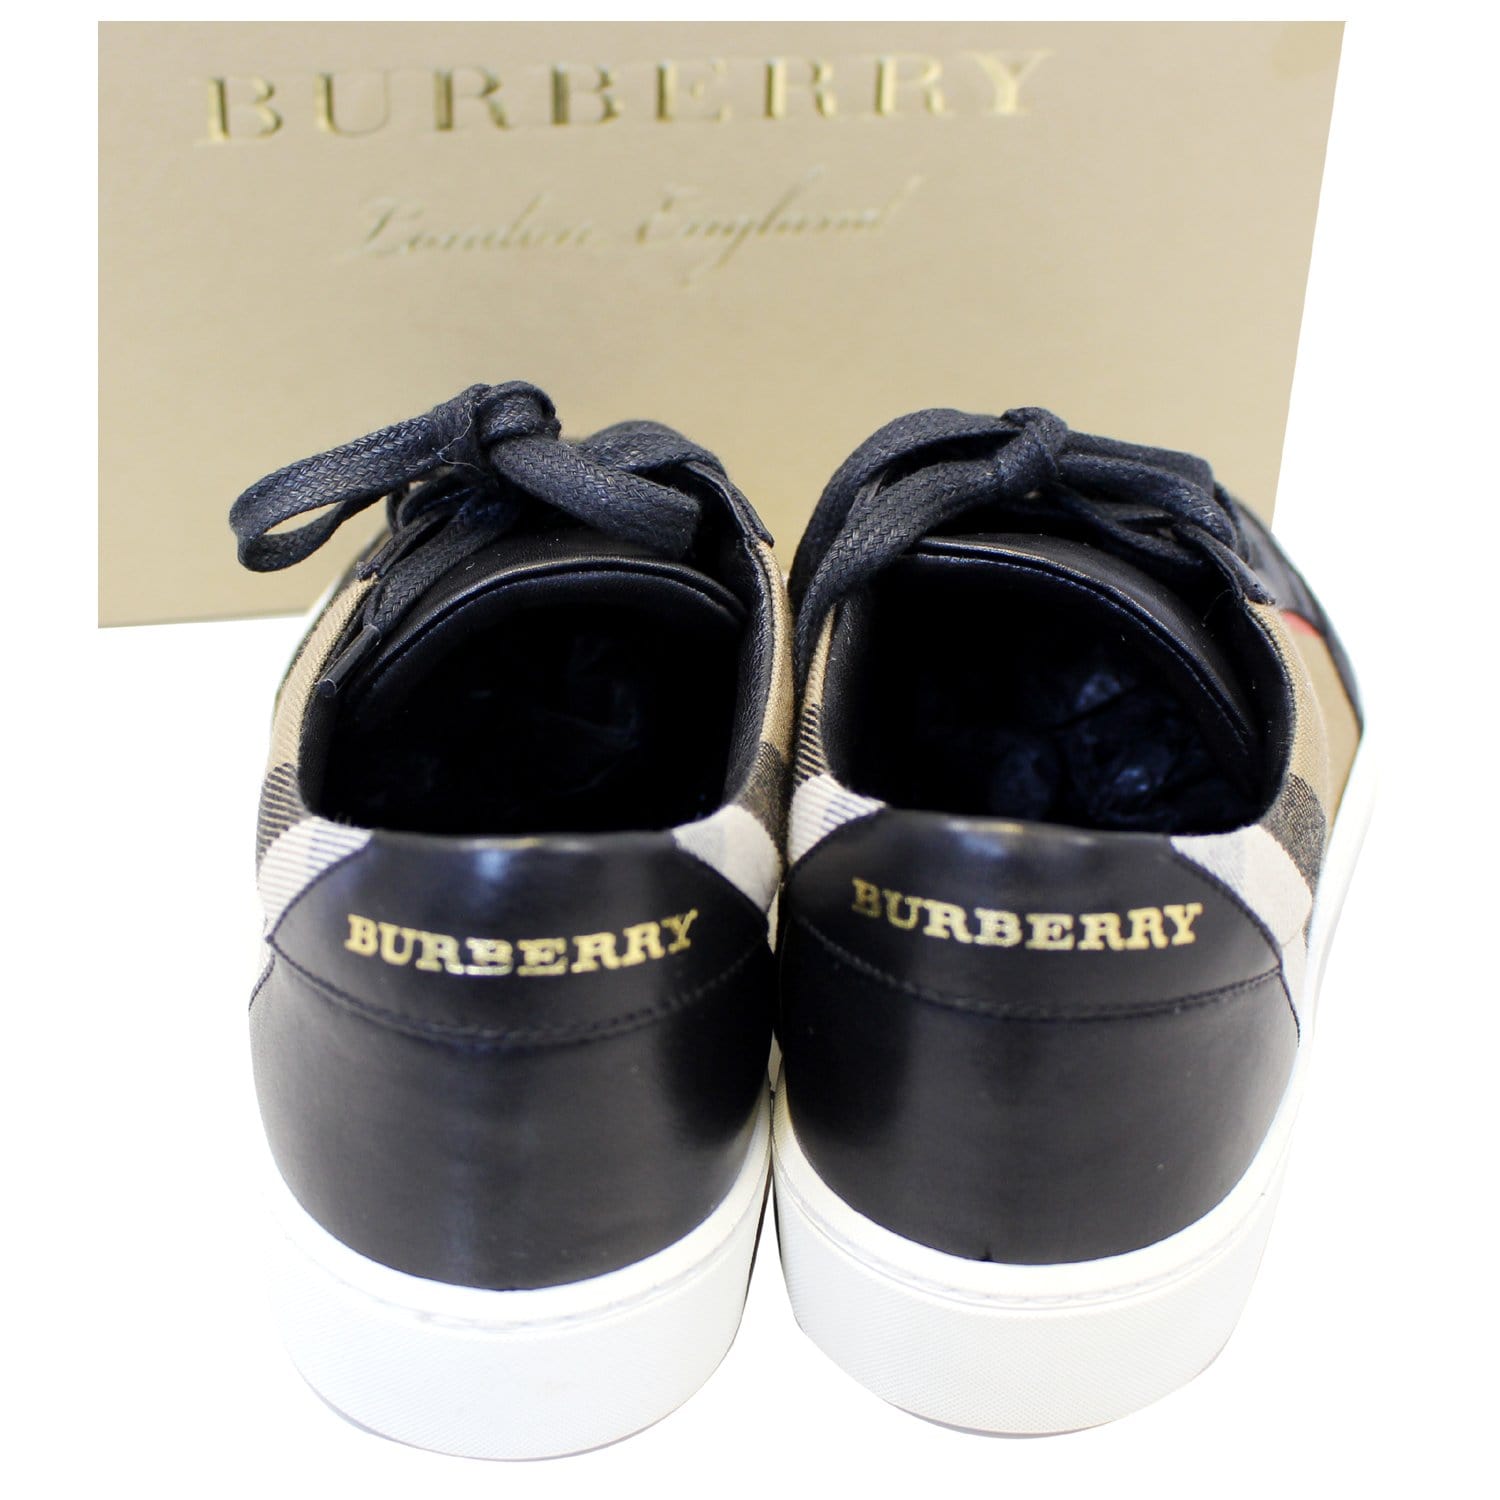 Burberry Sneakers  Sneakers, Burberry sneakers, Burberry